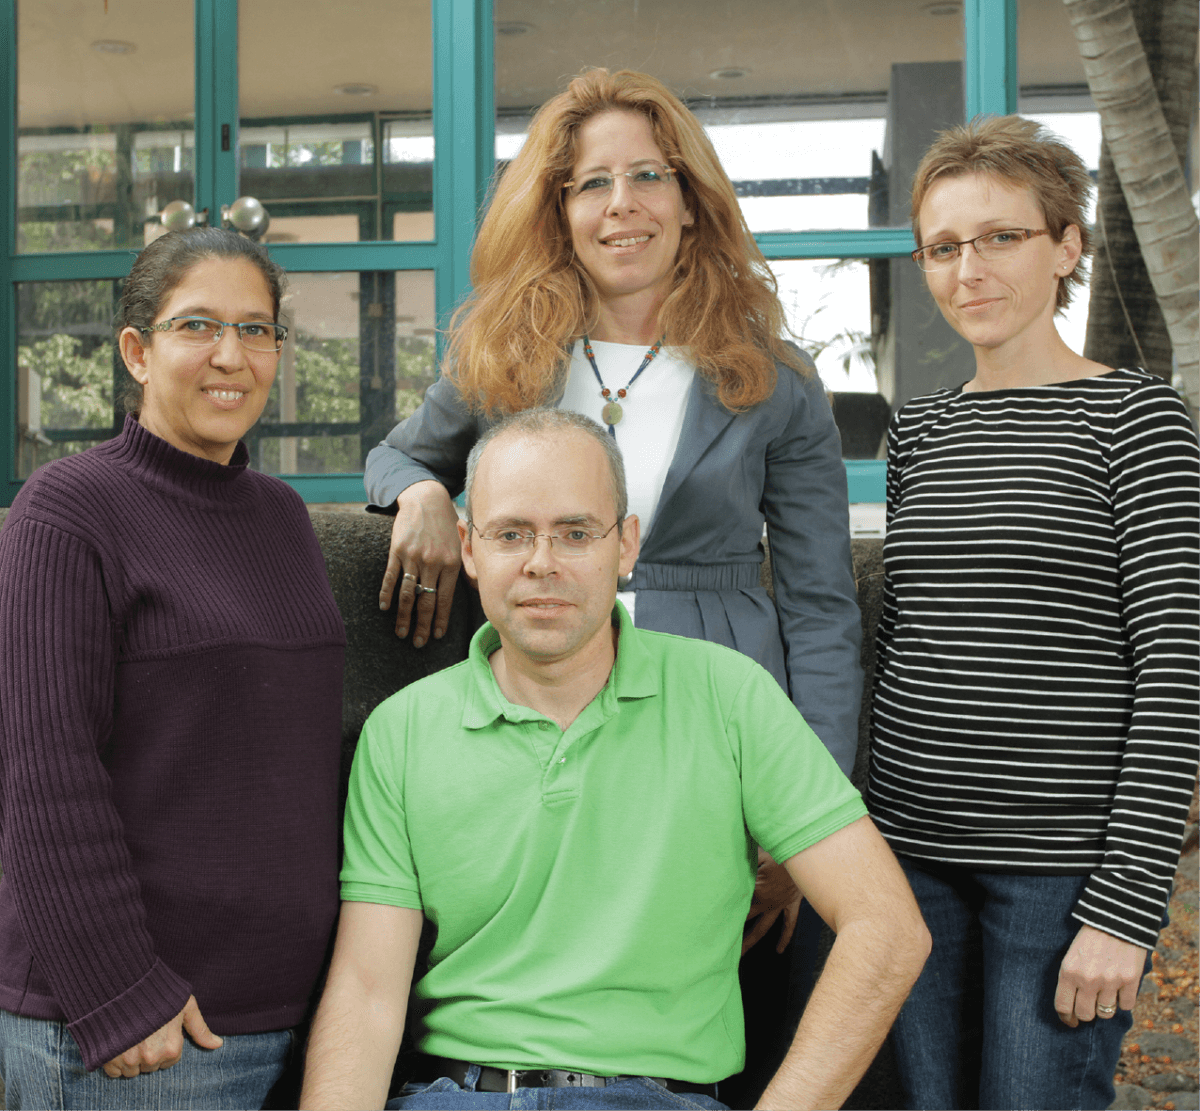 على اليمين: ماريا بوزشي ليفي، د.ميشال شارون، يشاي ليفين، وجيلي بن نيسان، المرونة، تصوير: معهد وايزمان.